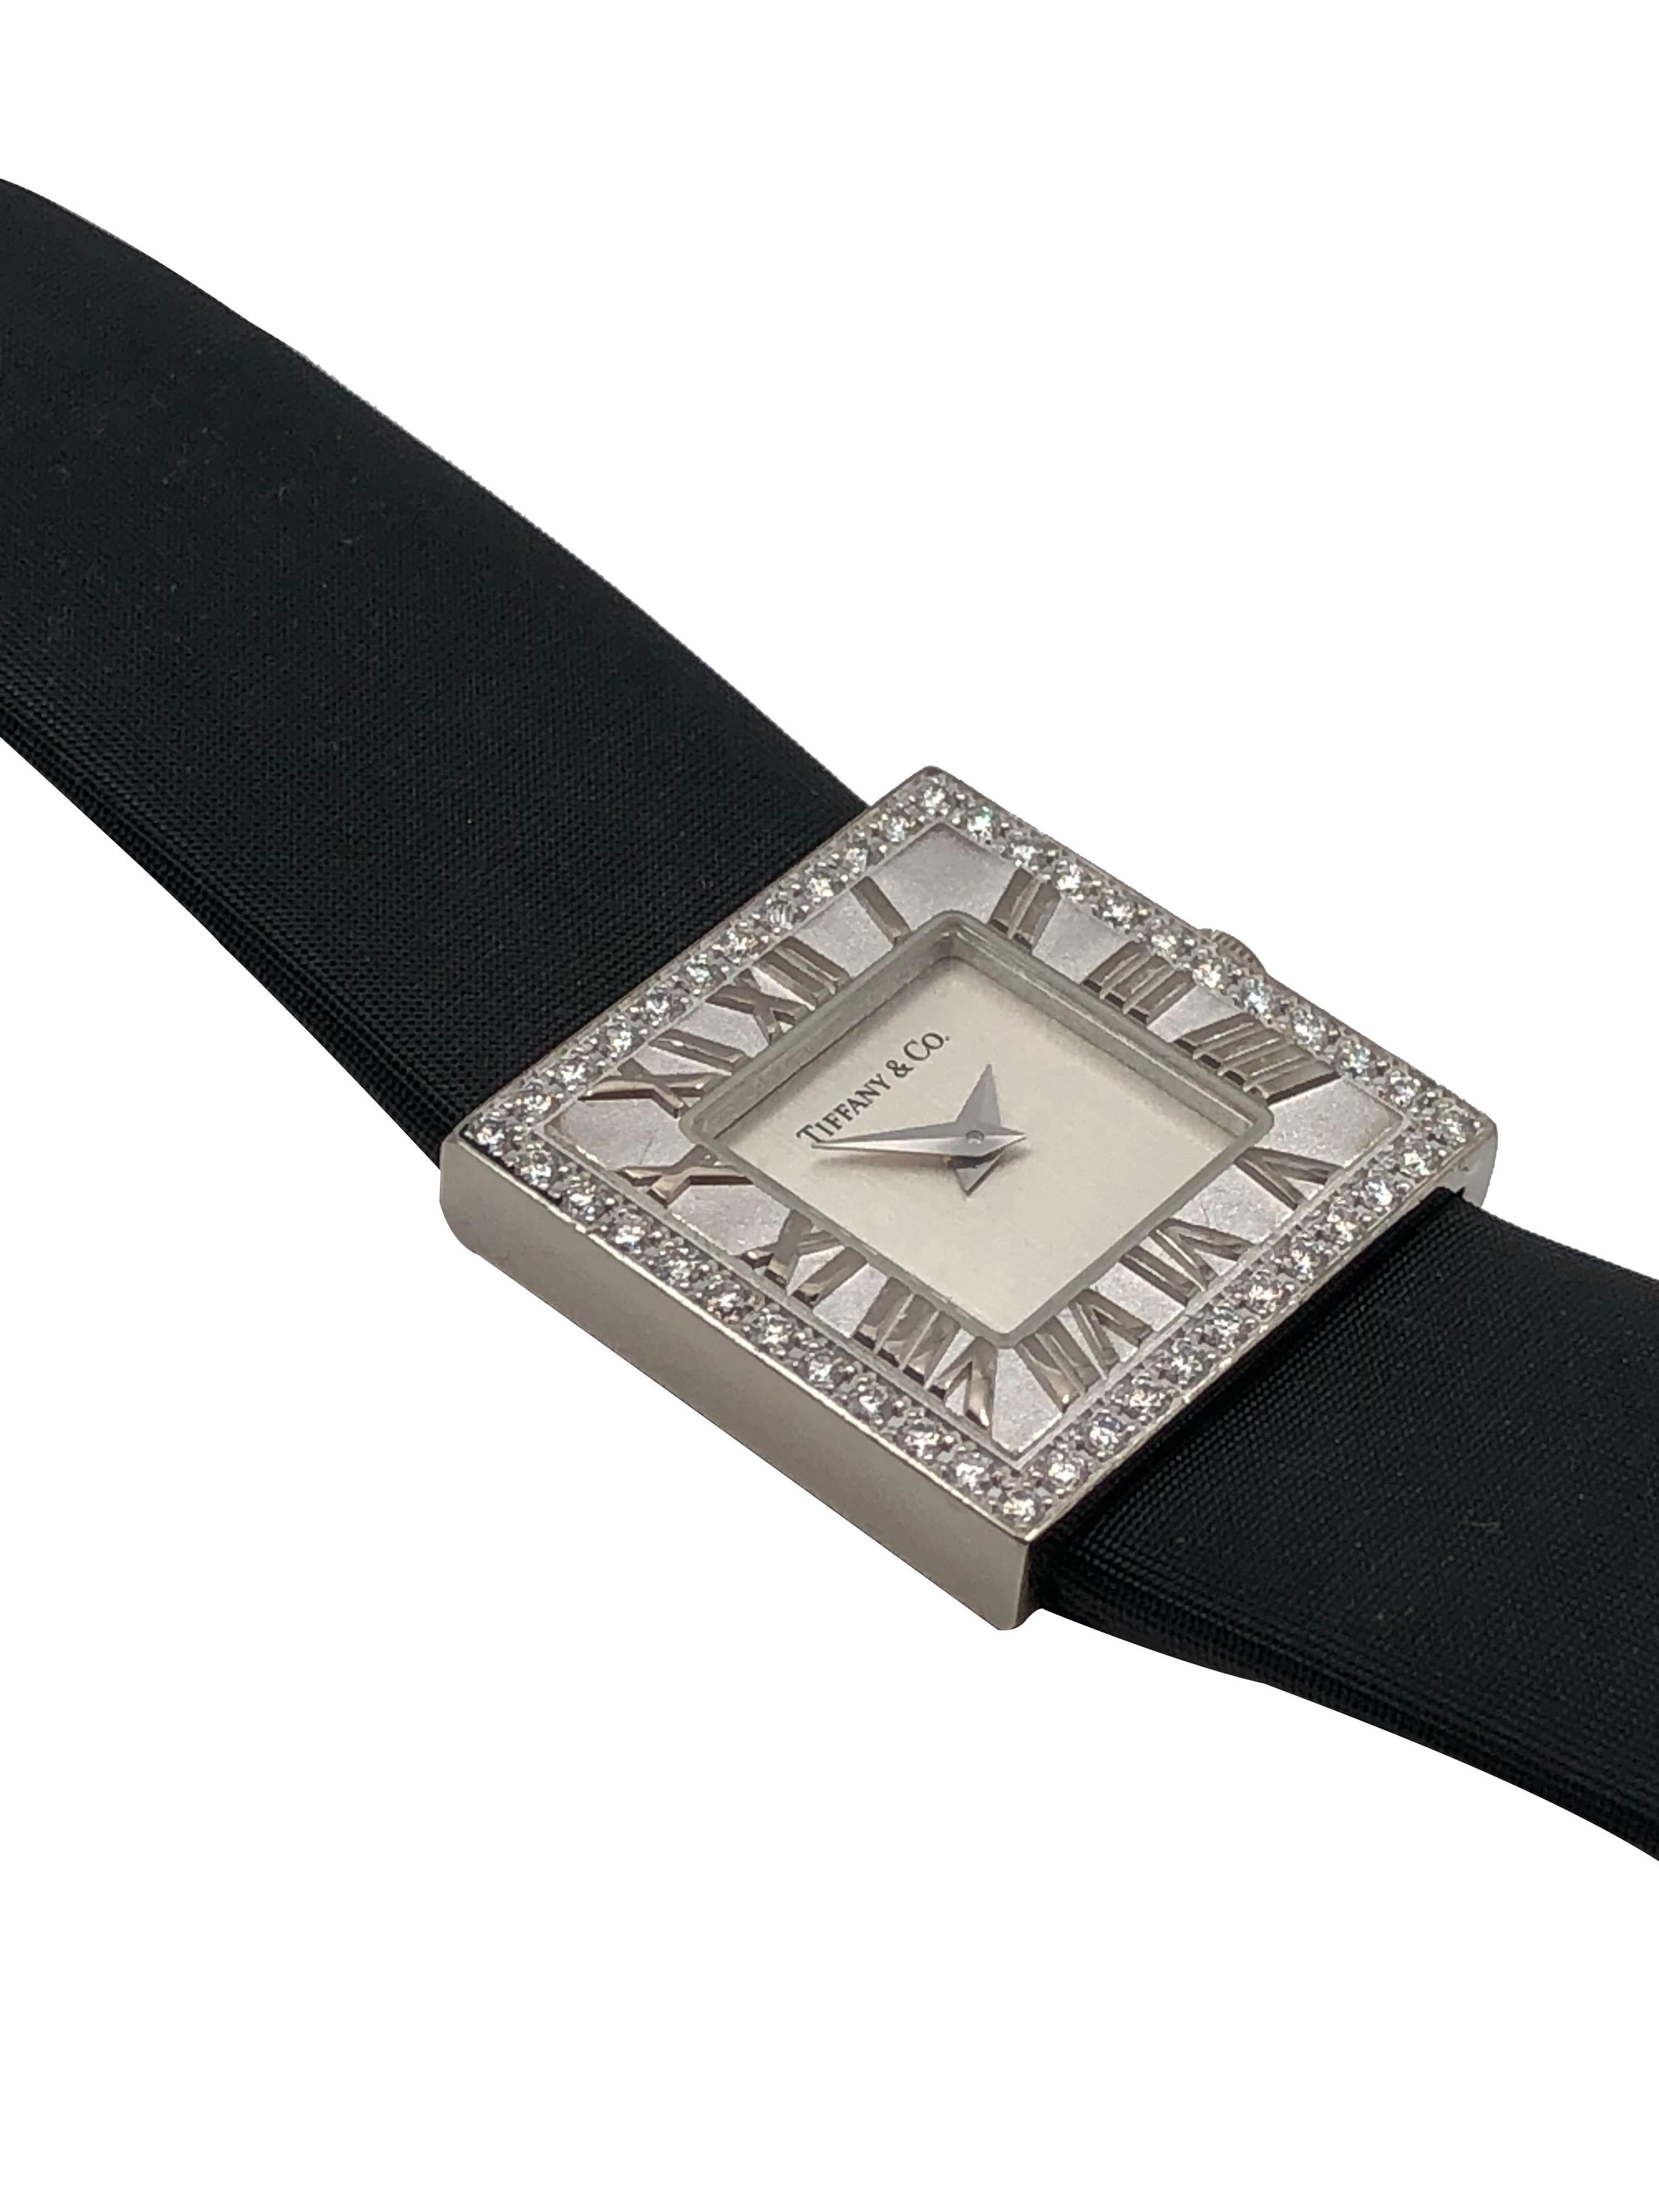 Circa 2005 Tiffany & Company Reloj de pulsera de la colección Atlas de oro blanco de 18 quilates, caja de 21 X 21 MM resistente al agua, movimiento de cuarzo. Esfera plateada. Bisel interior con números romanos en relieve y bisel exterior de